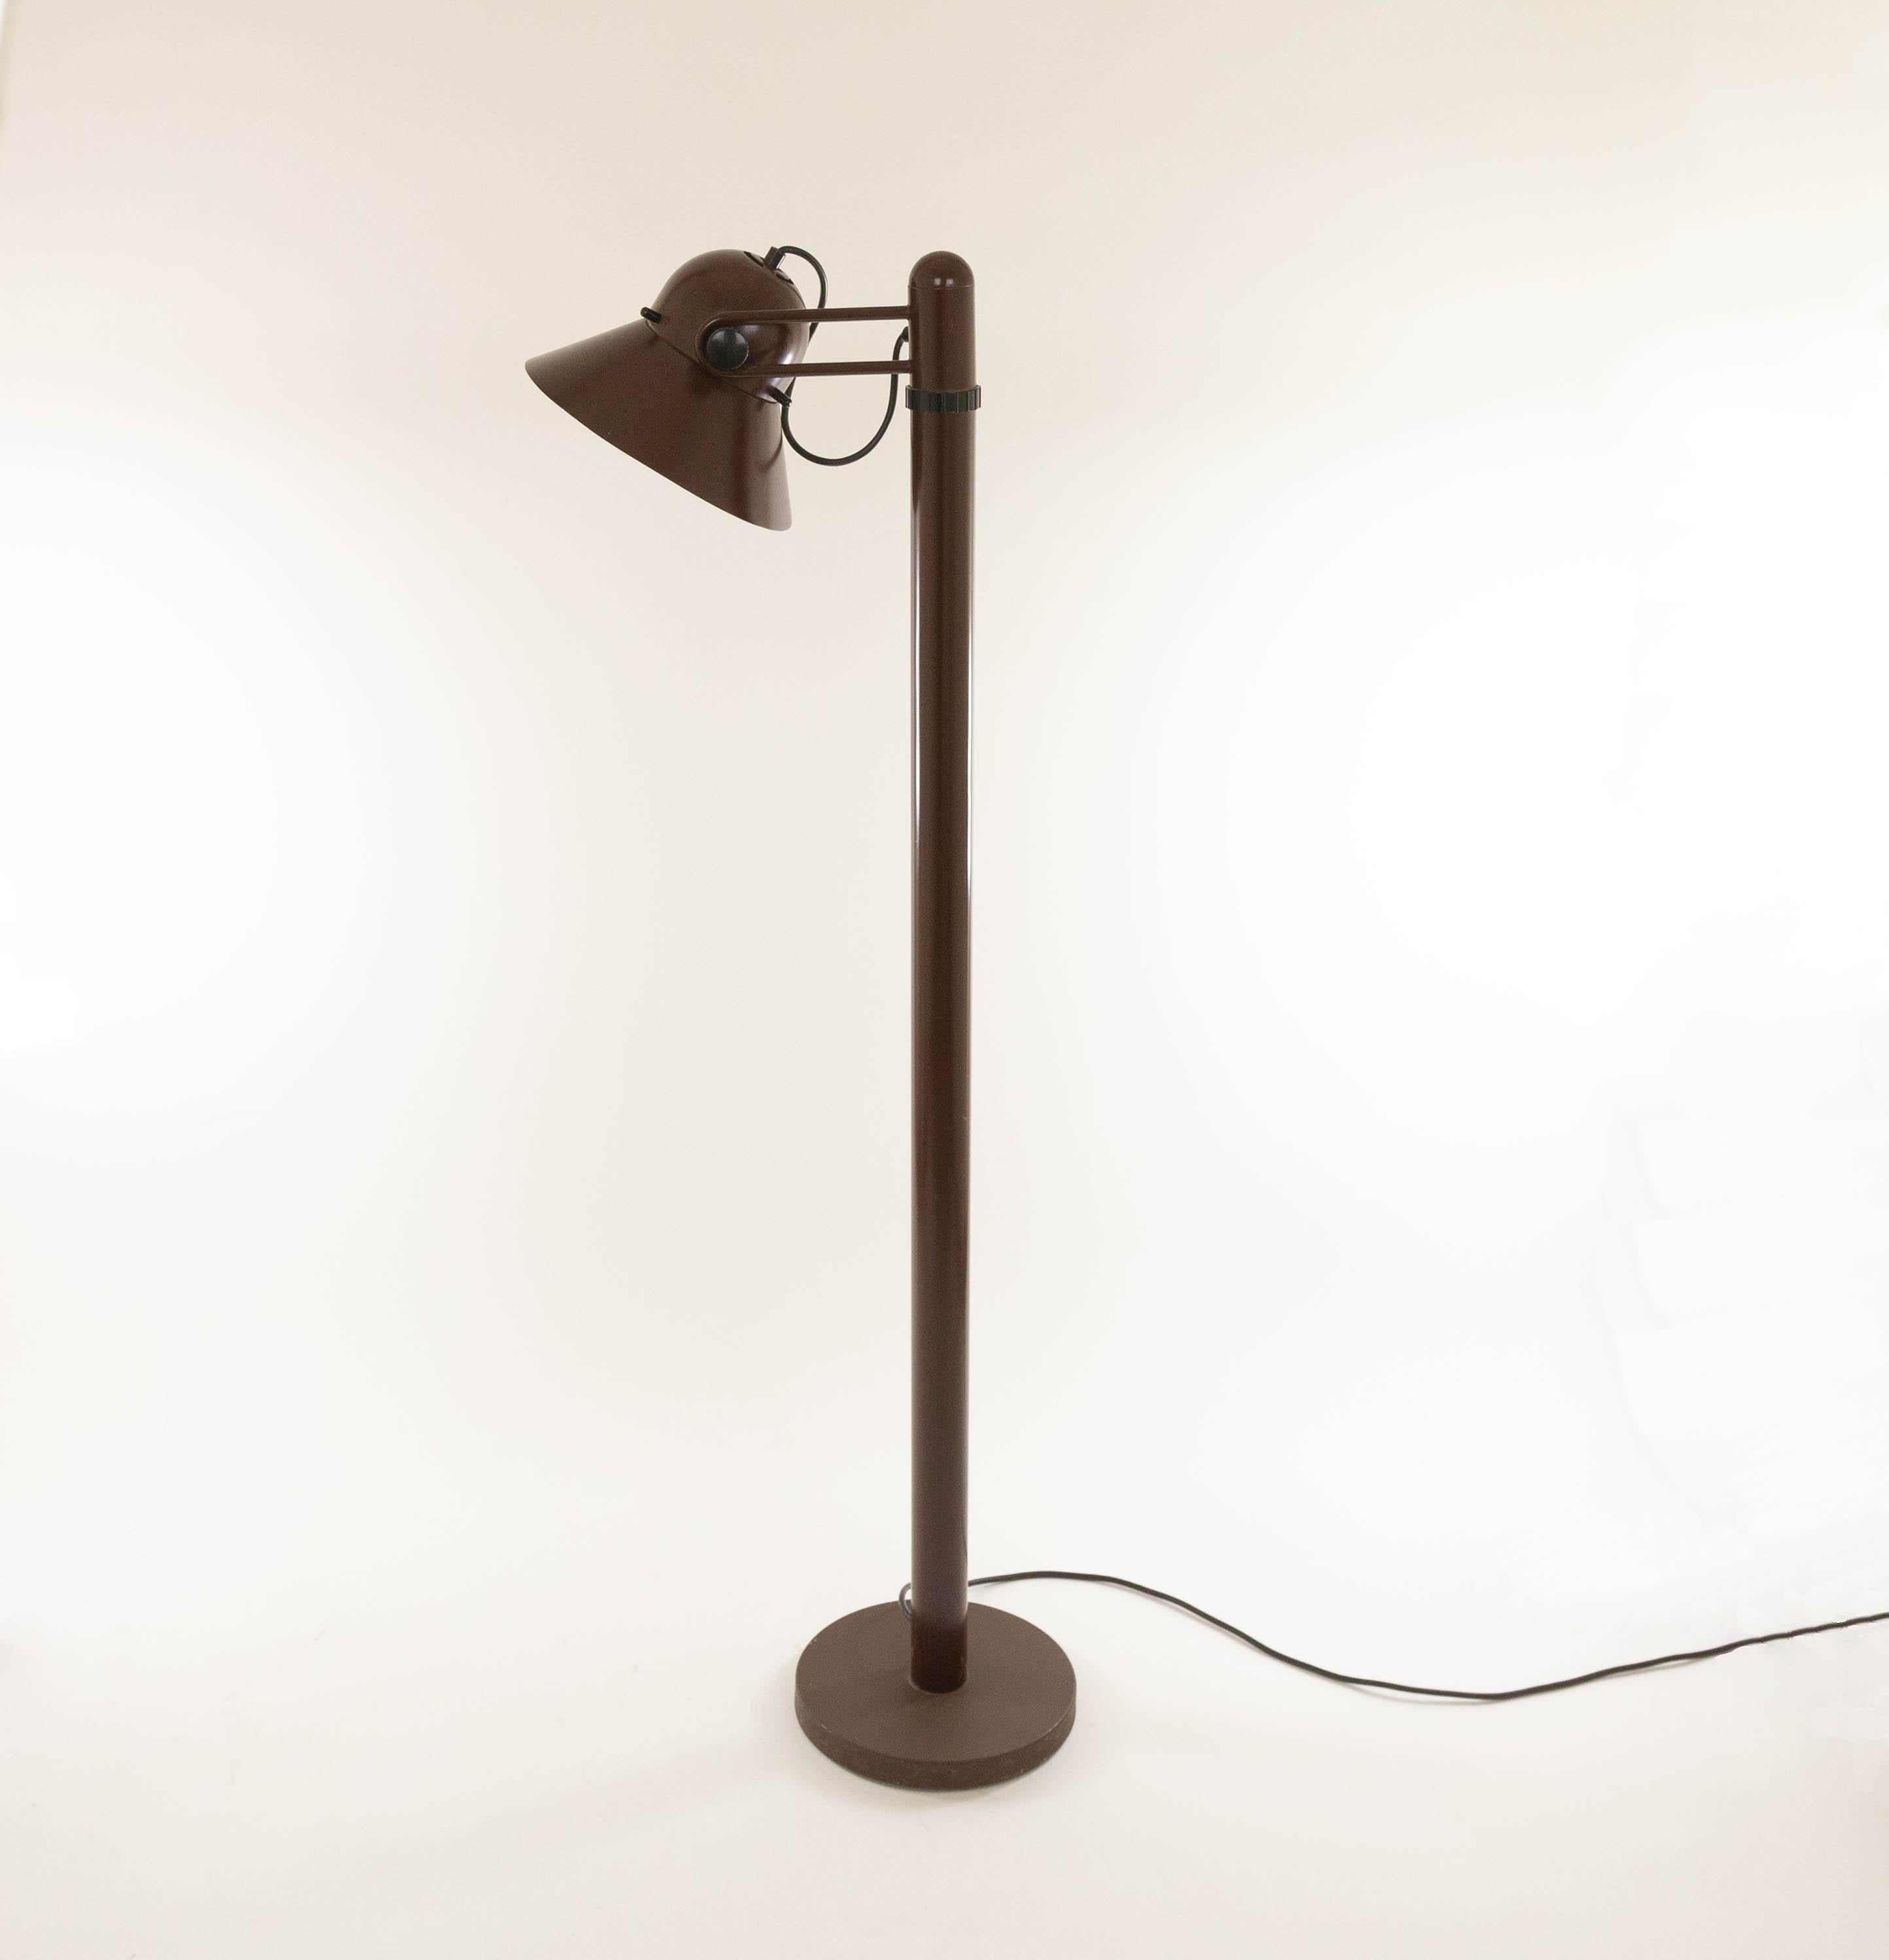 Drehbare dunkelbraune Stehleuchte aus lackiertem Metall, entworfen von Gae Aulenti und hergestellt von Stilnovo in den 1970er Jahren. Der obere Teil der Leuchte ist um 360 Grad schwenkbar und der Schirm selbst kann verstellt werden.

Dieses Modell